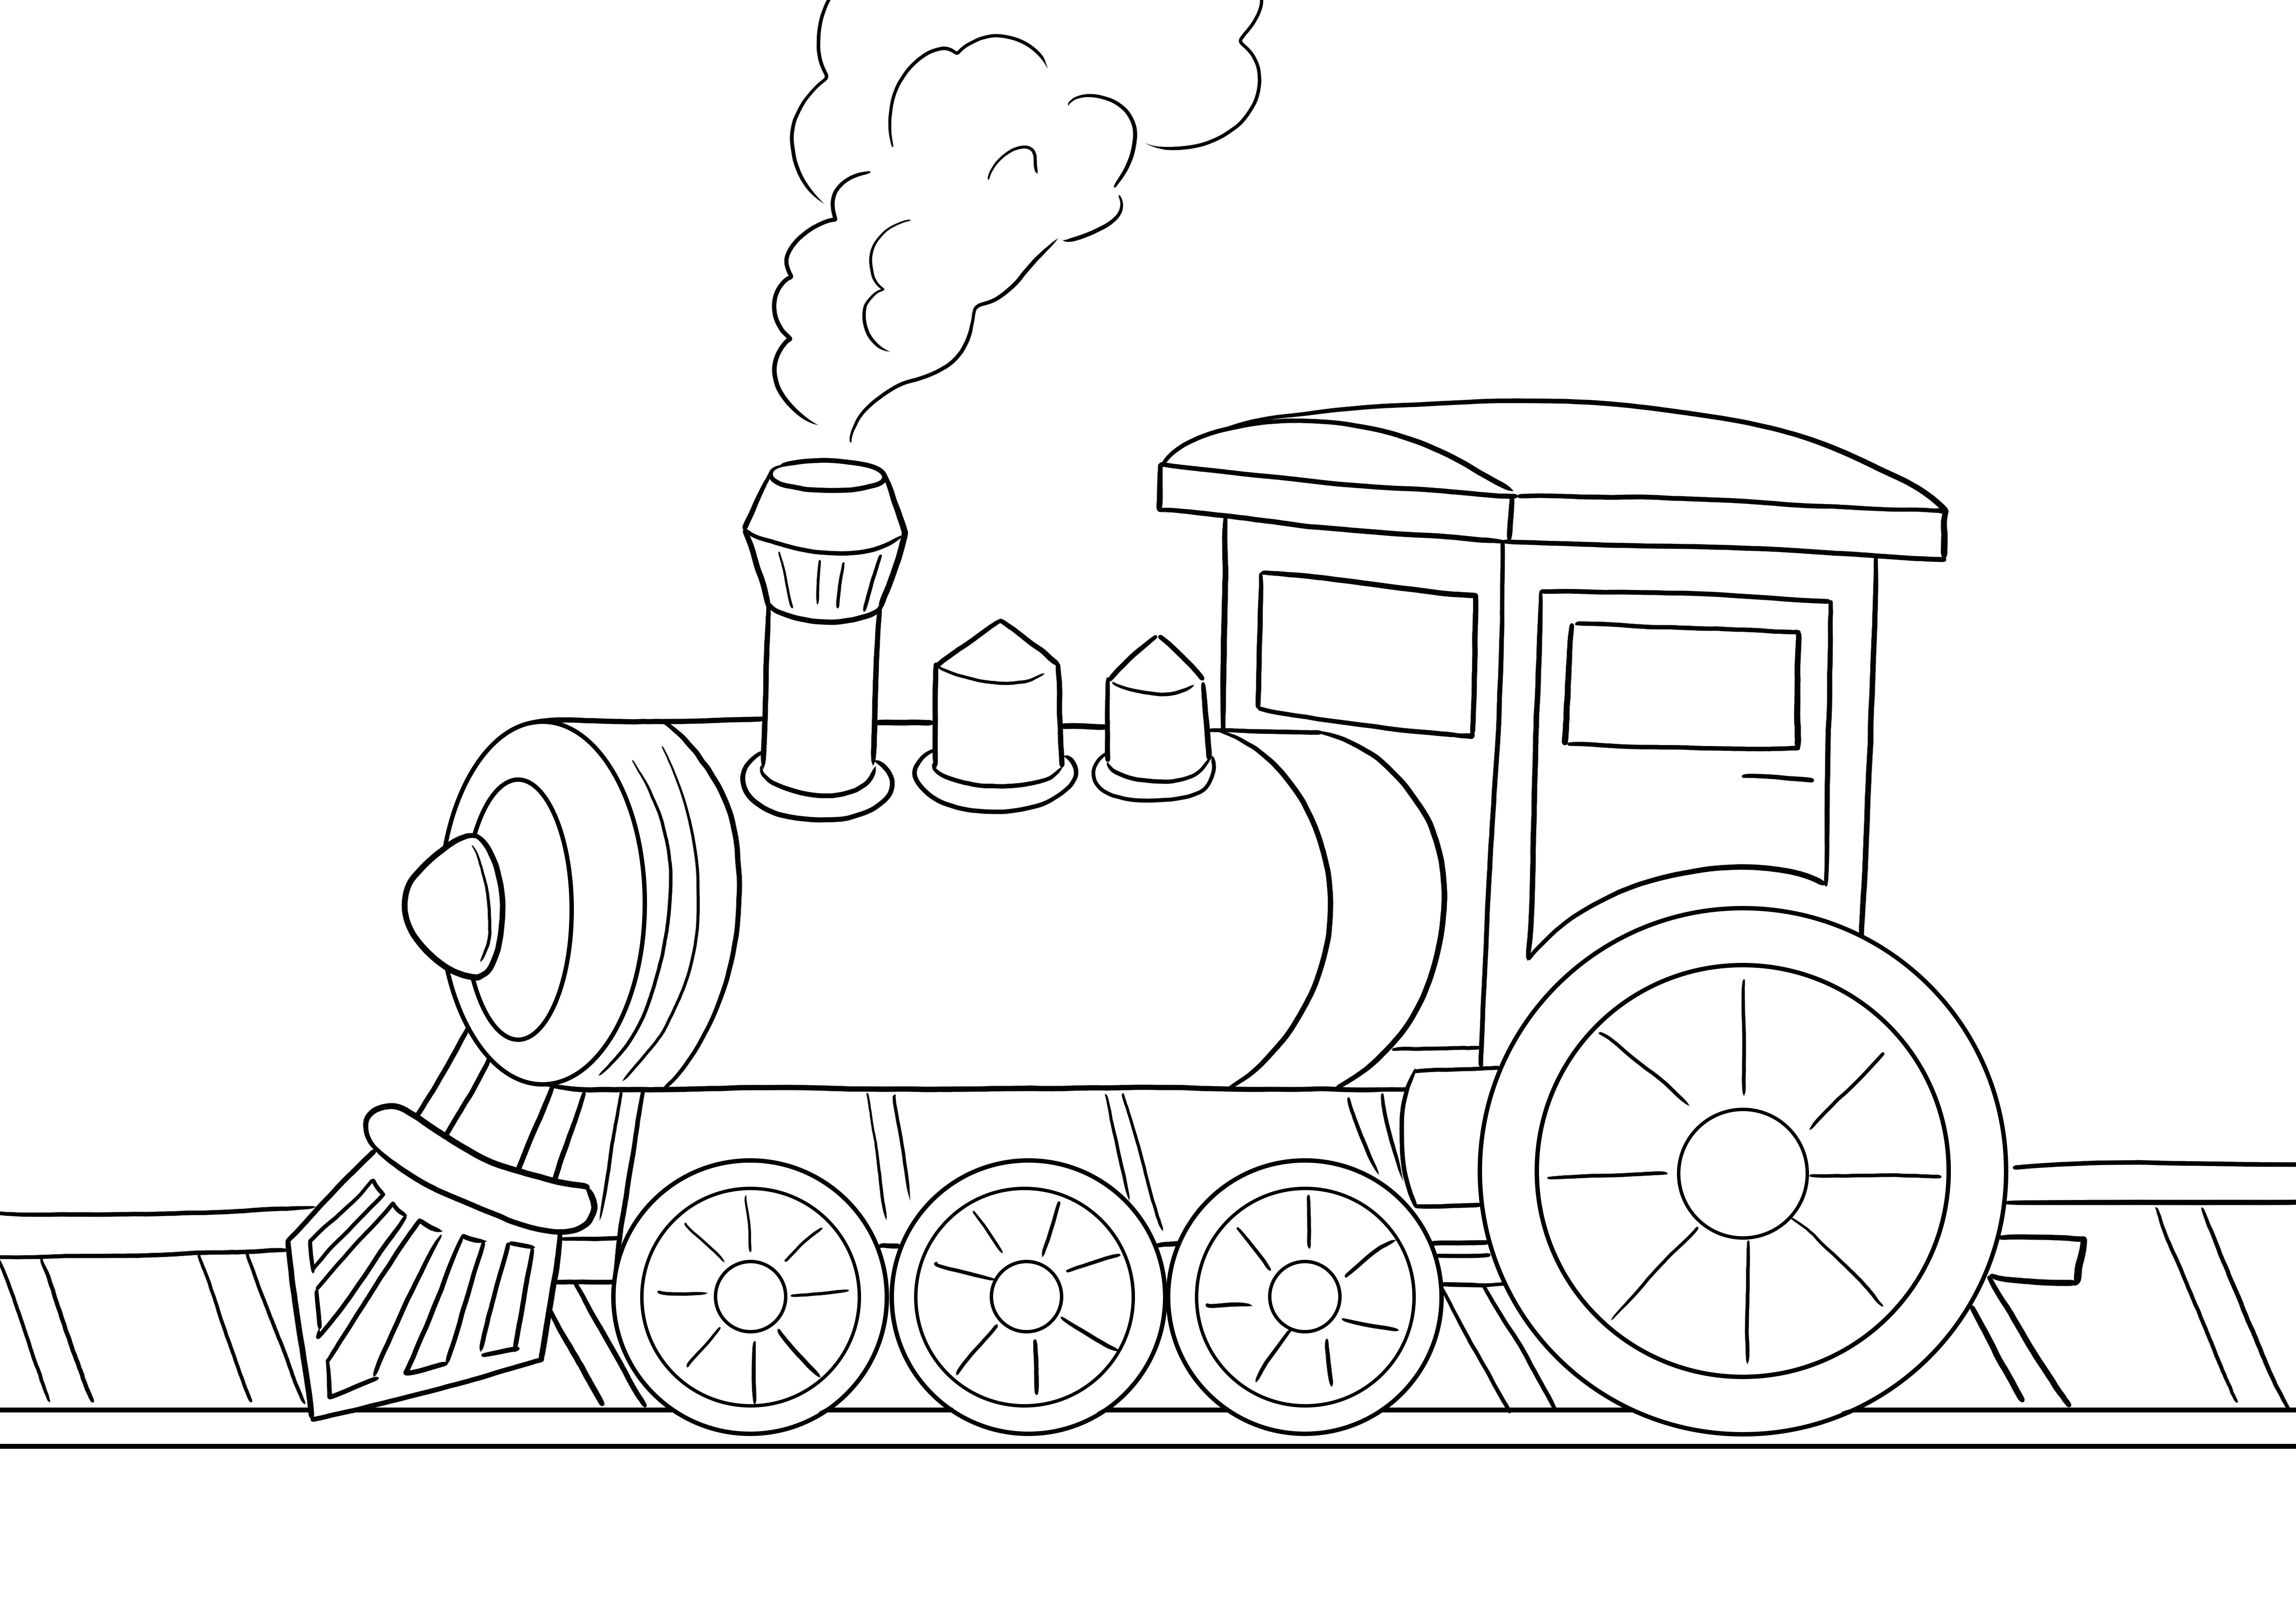 Locomotive à vapeur téléchargeable gratuitement et facile à colorier pour apprendre en s'amusant